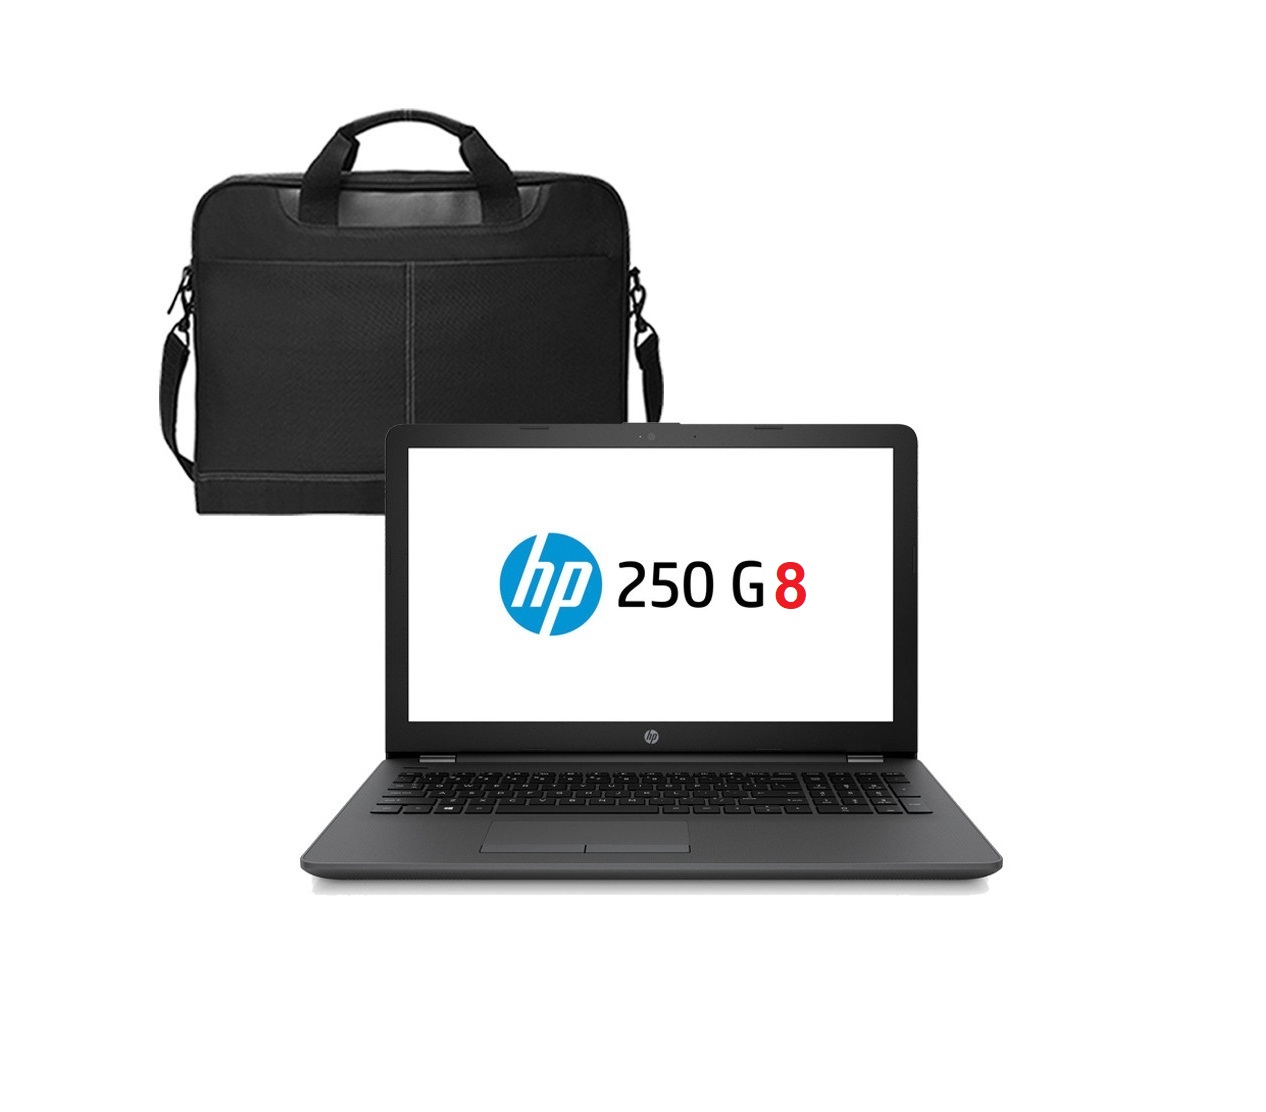 Sacoche HP pour ordinateur portable 15.6 - neuve